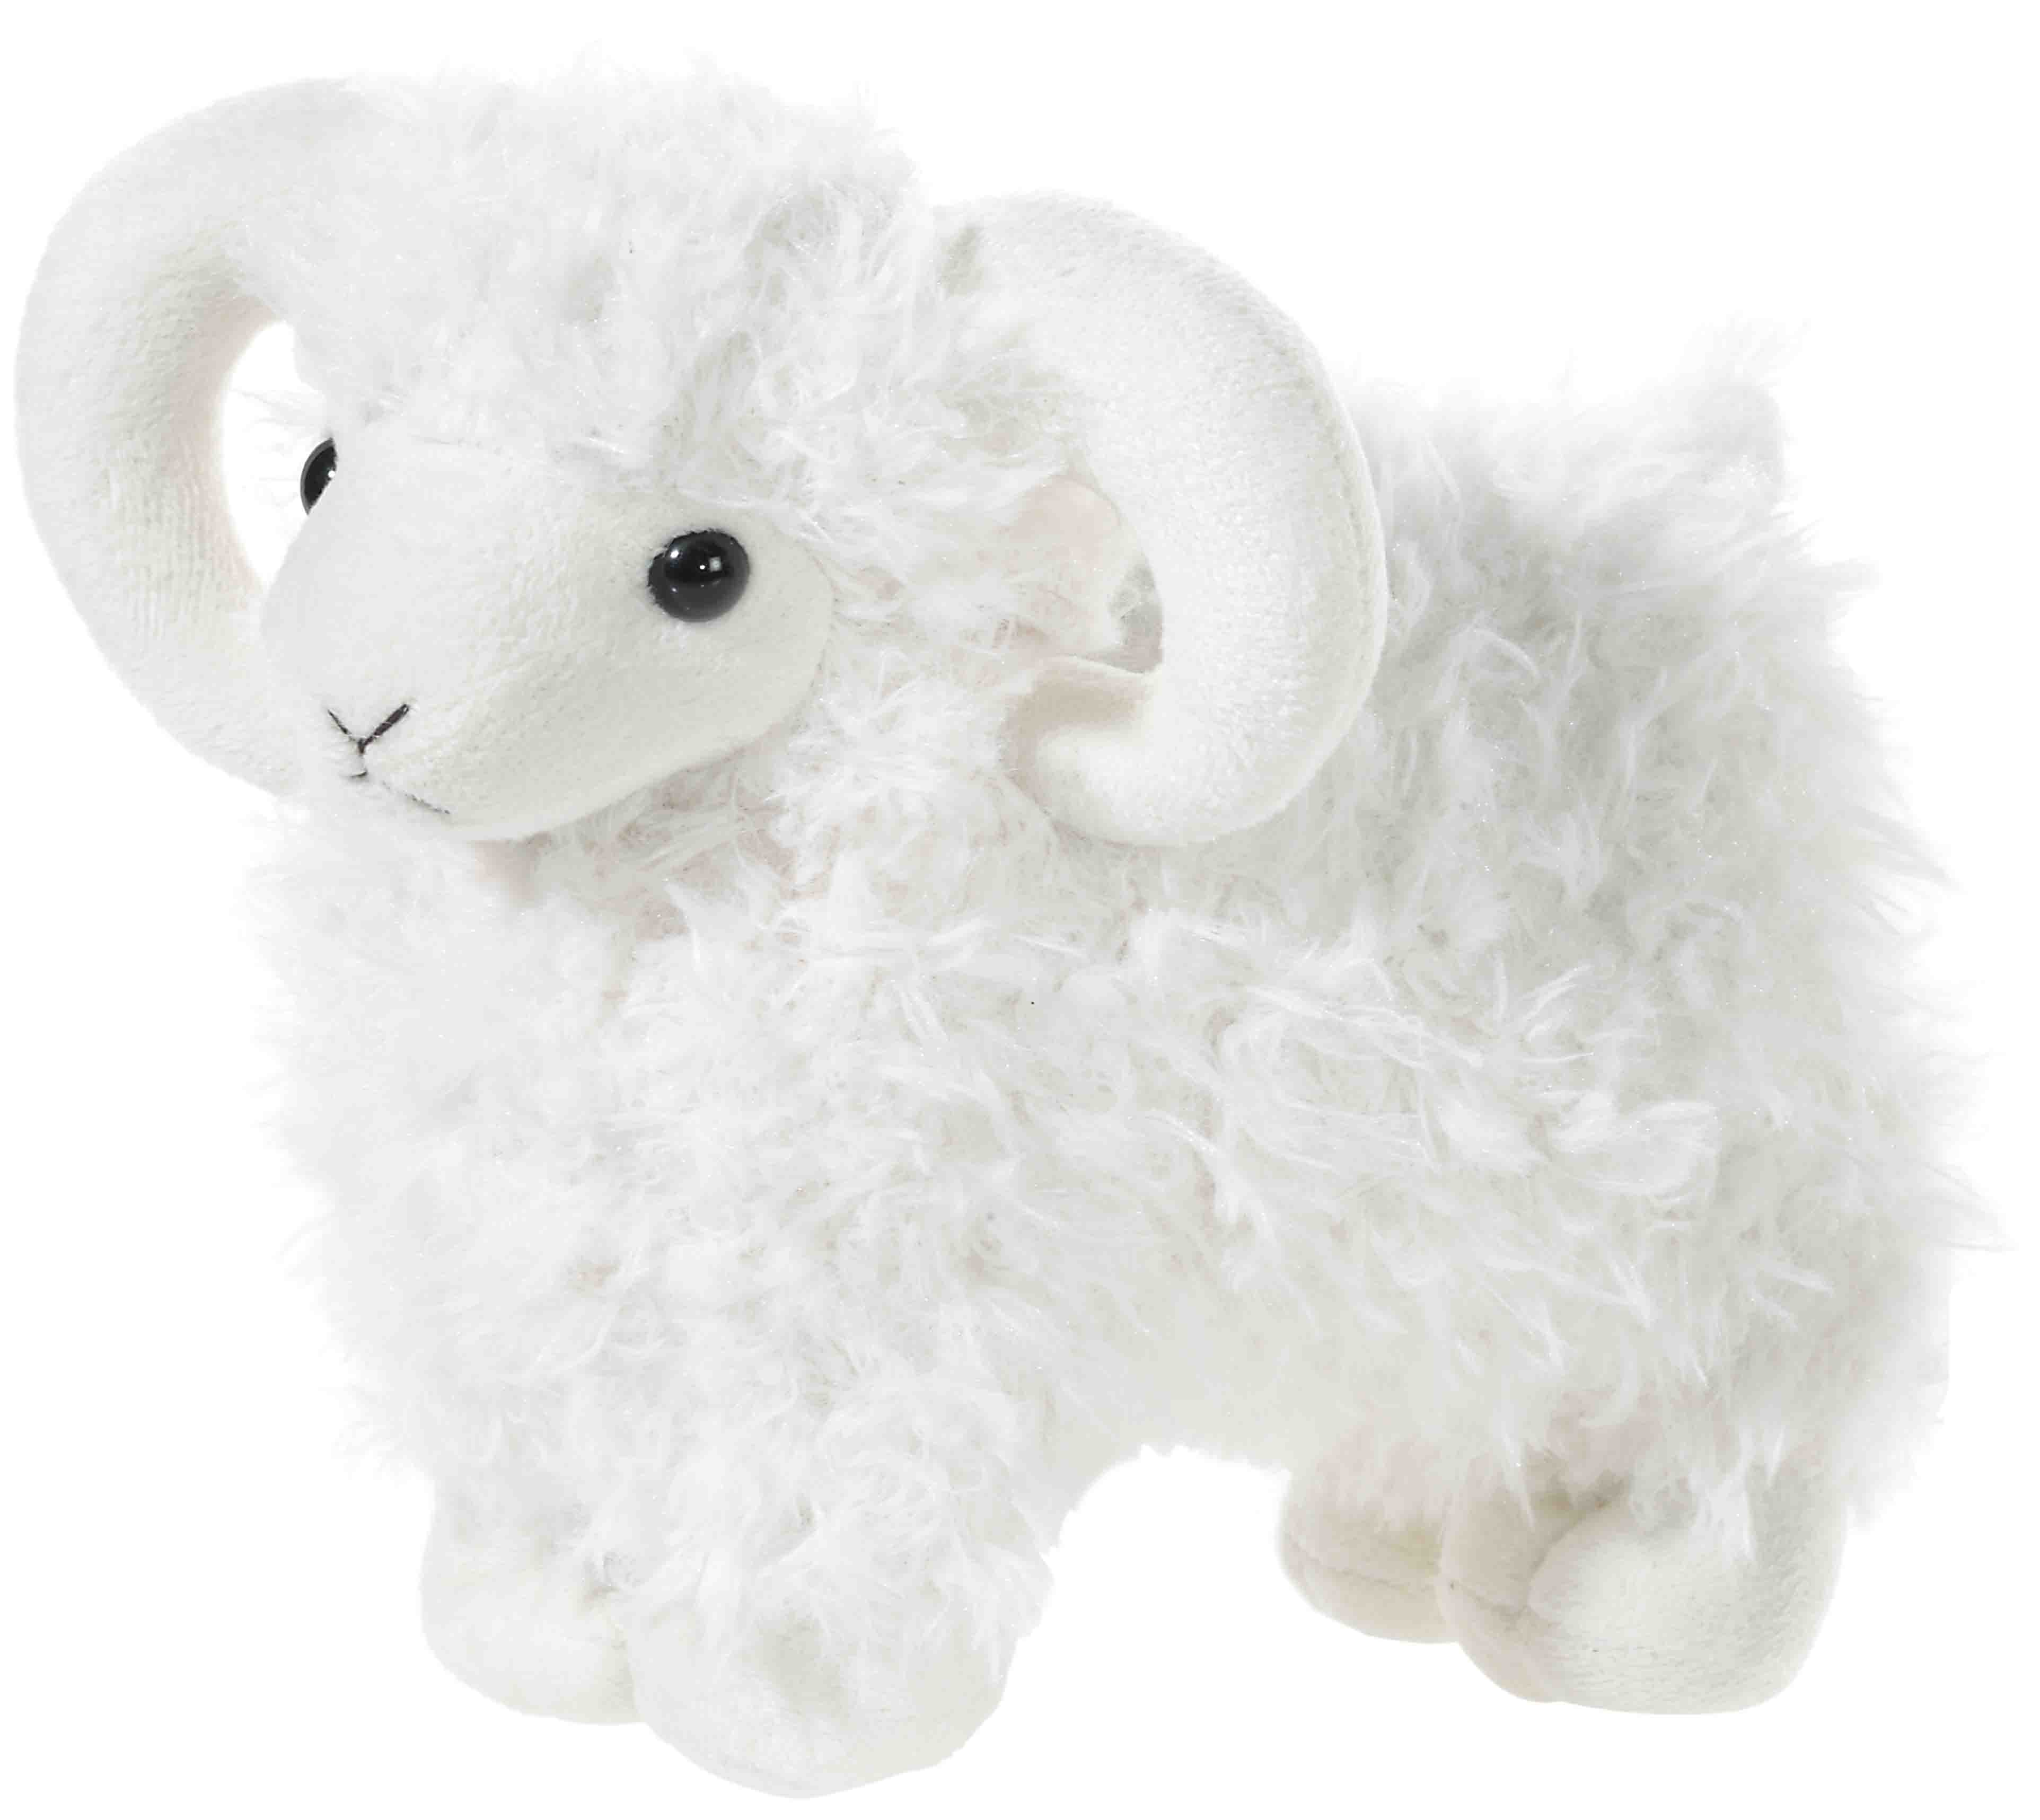 Heunec putziges, weißes Lamm stehend in 24cm Größe